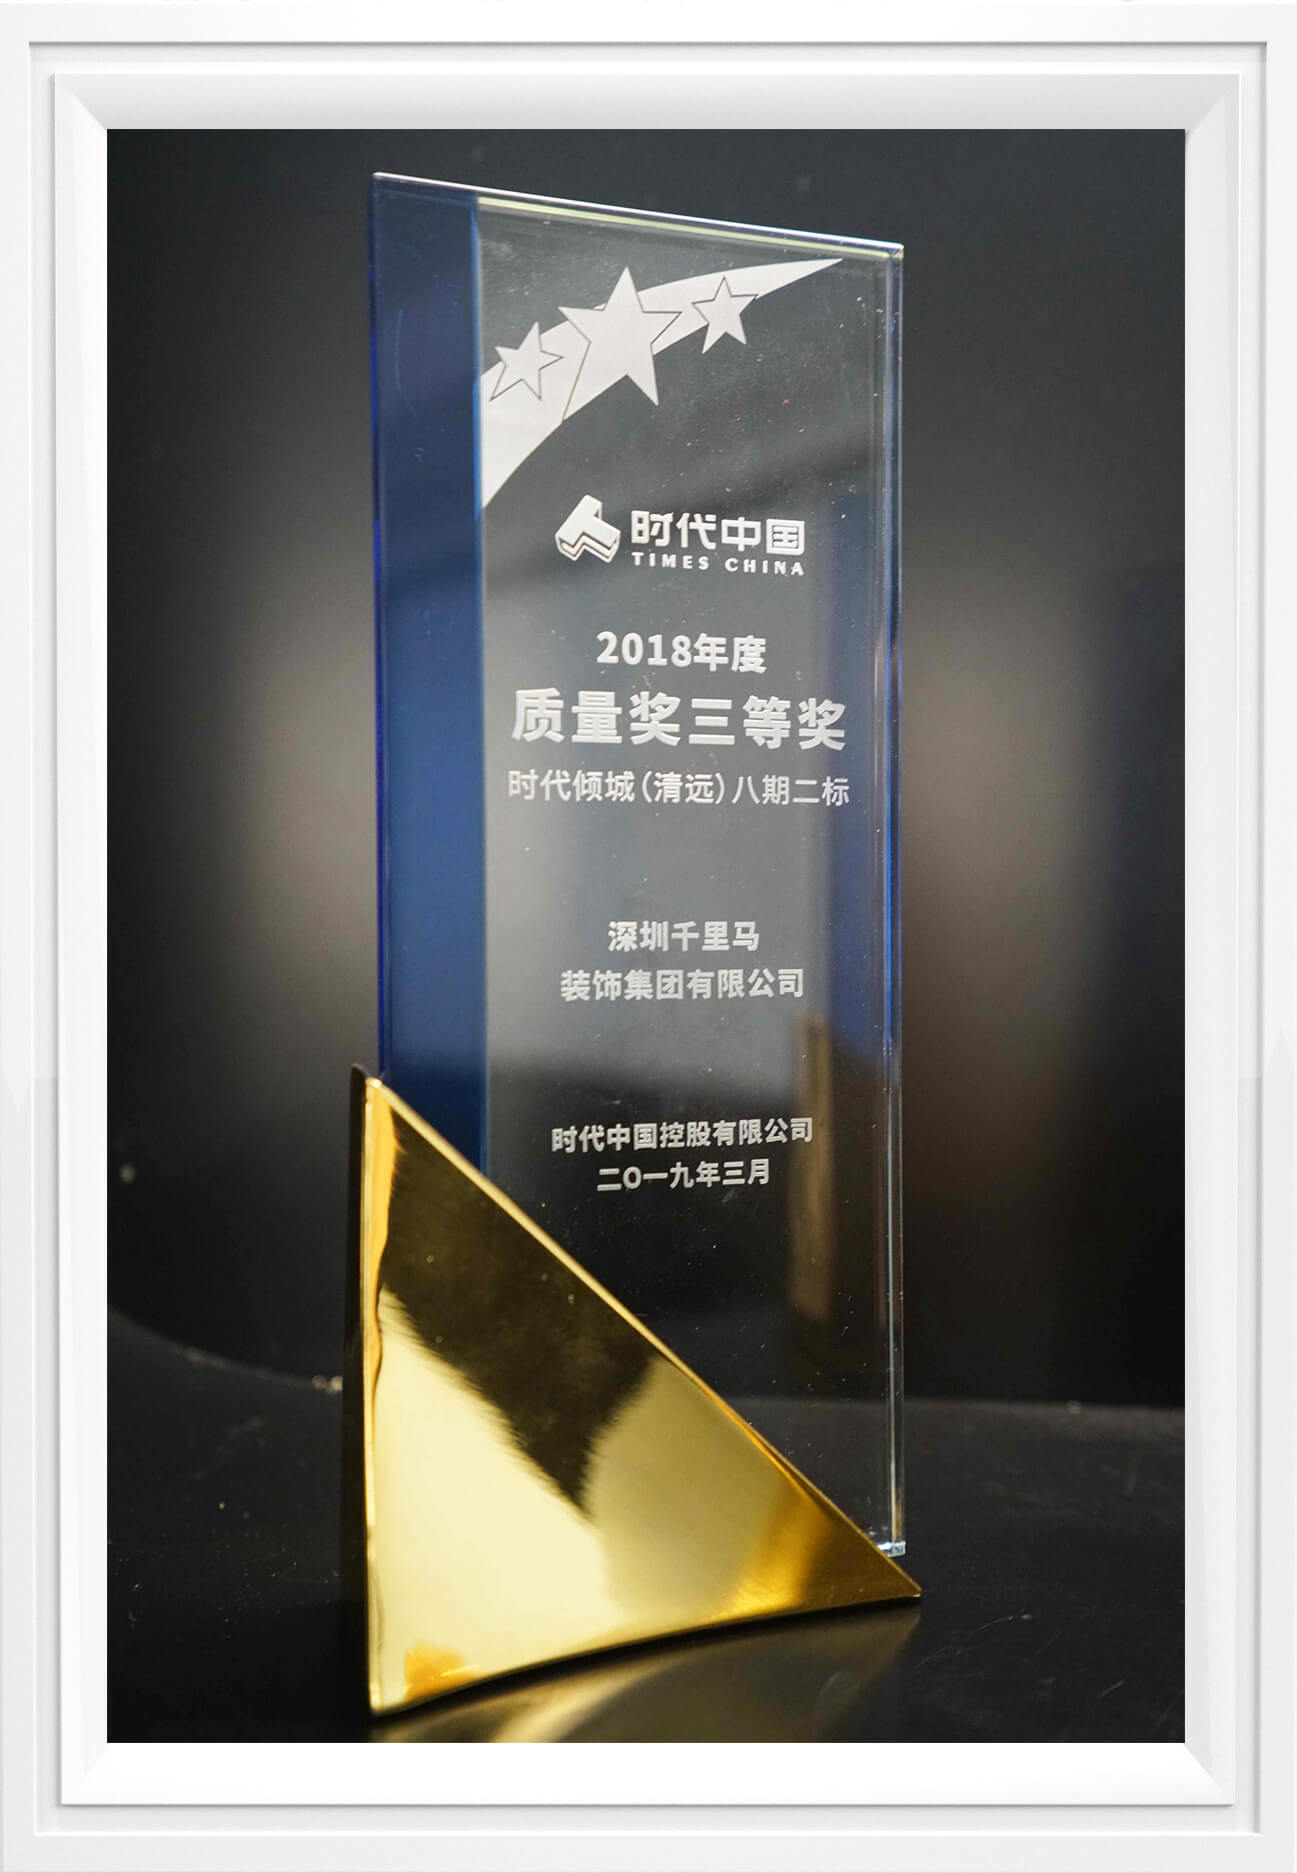 2018年时代中国-质量奖